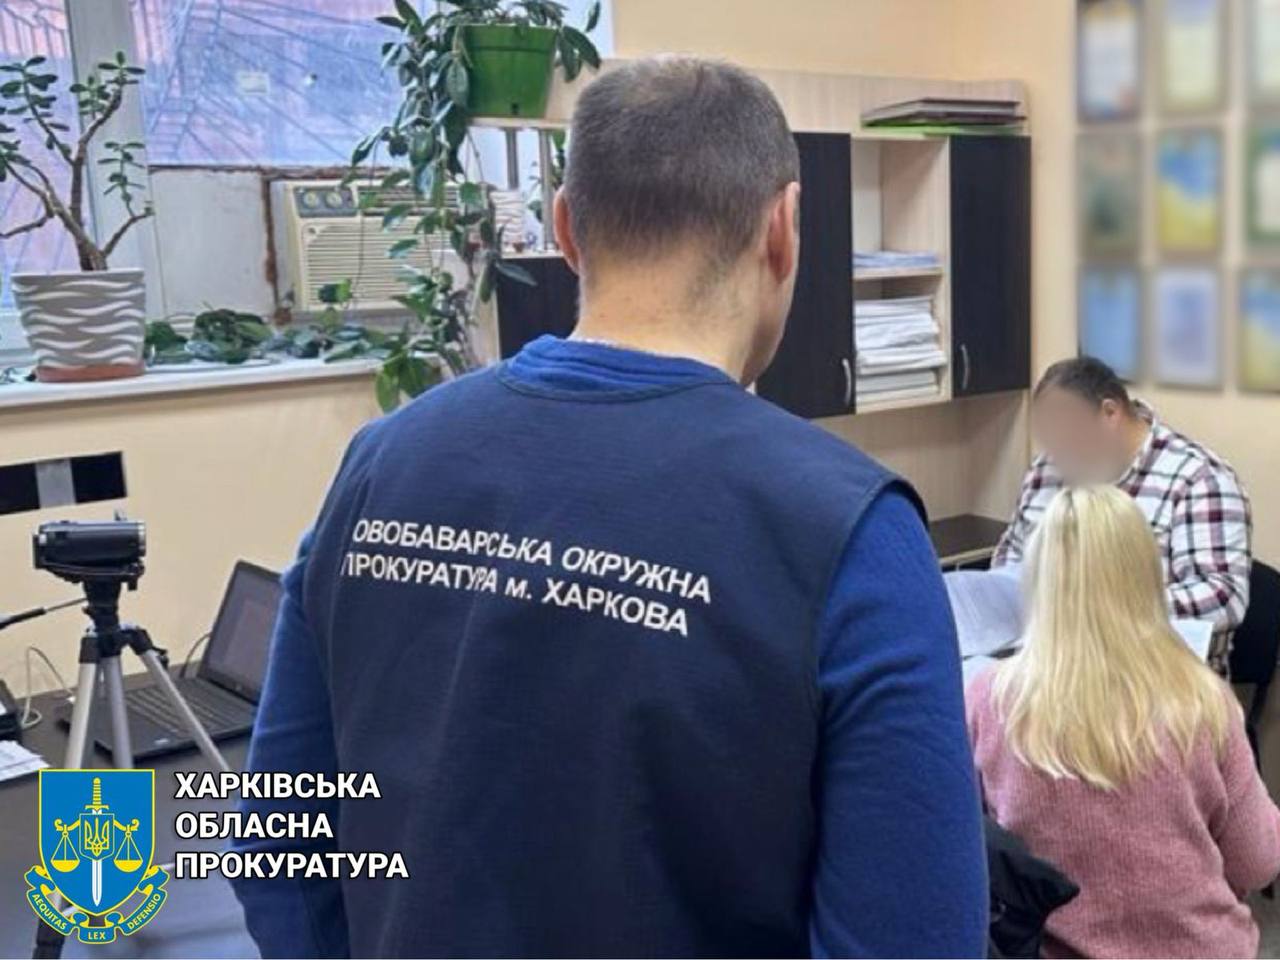 Позбавлення волі на строк від 2 до 5 років: викрито посадовицю філії «Укрзалізниці»